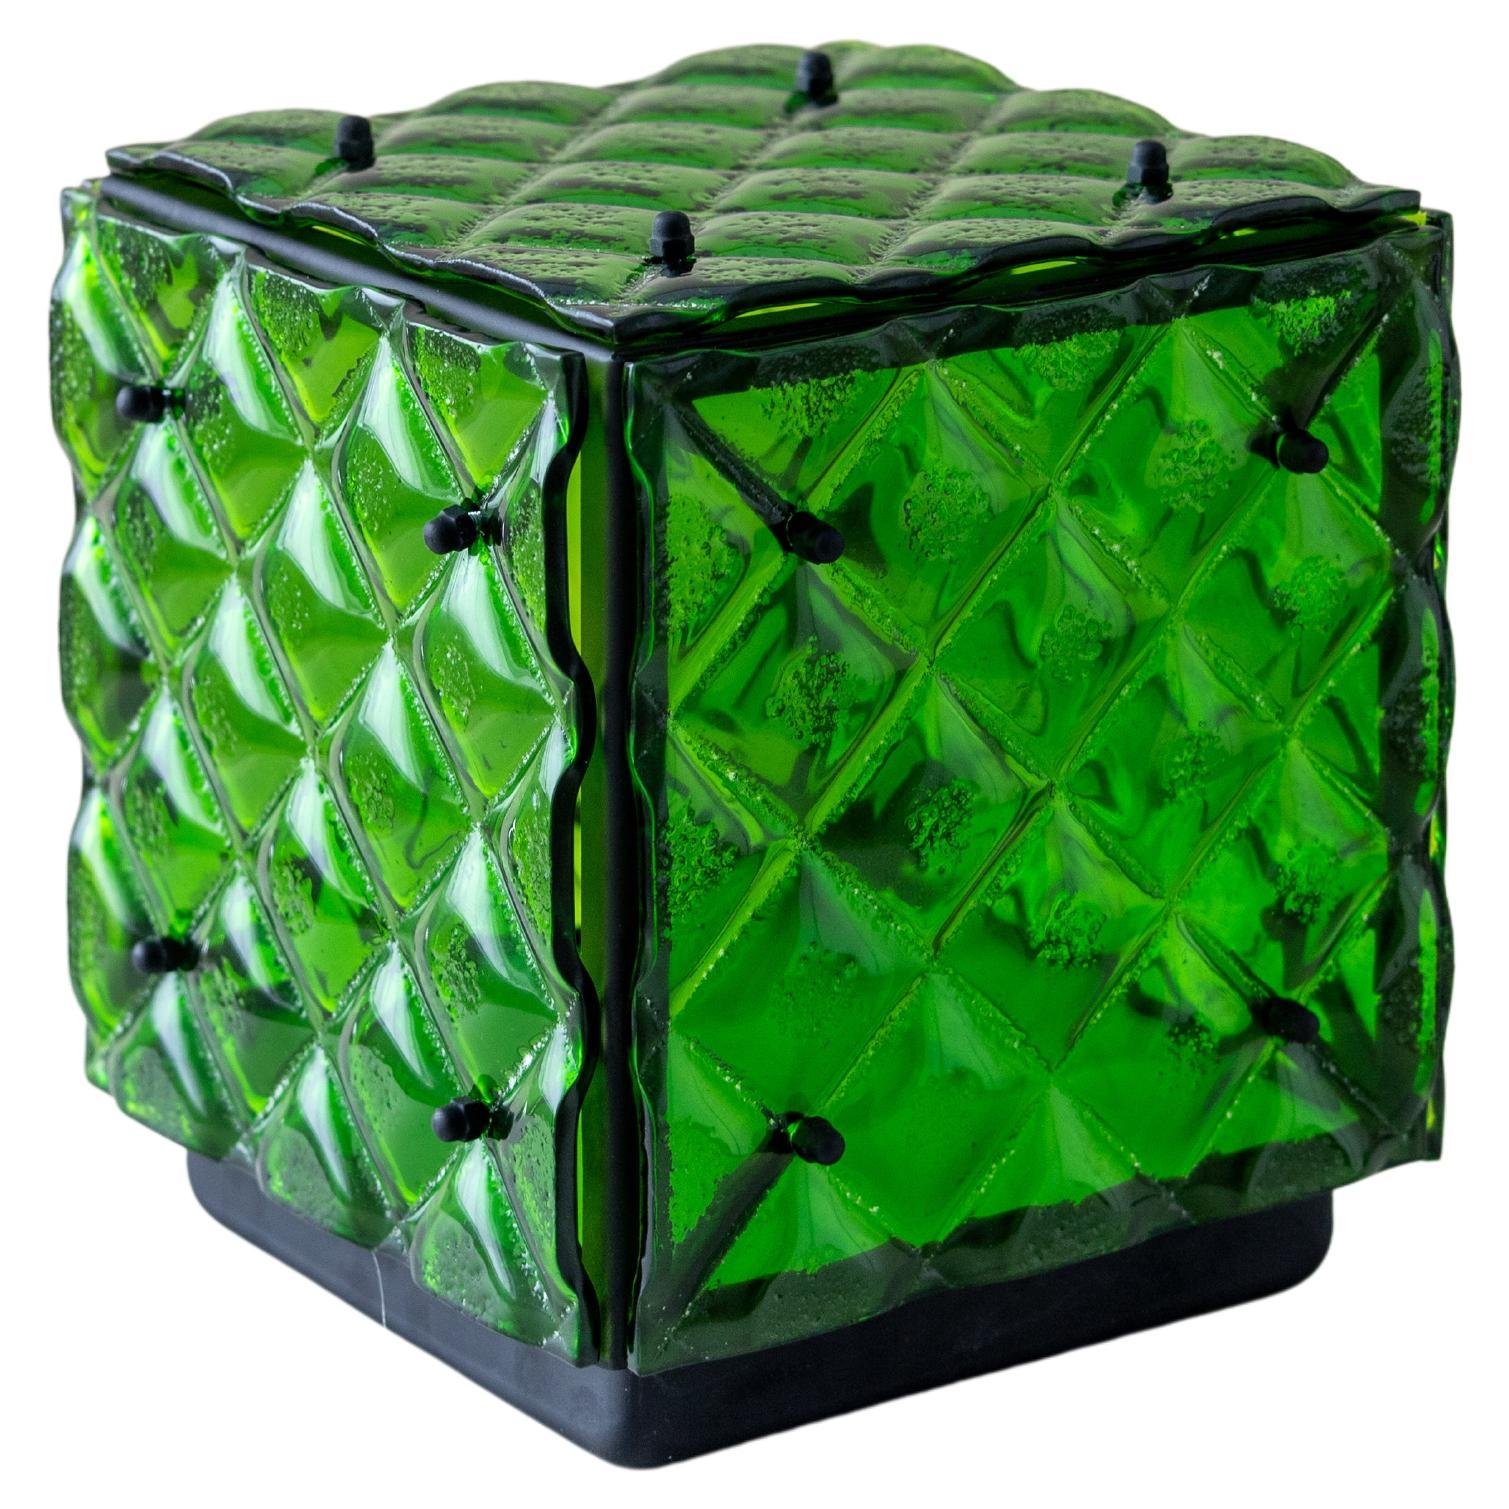 Lampe cubique en verre vert Ambient Light Verre fusionné artisanal Design Contemporary